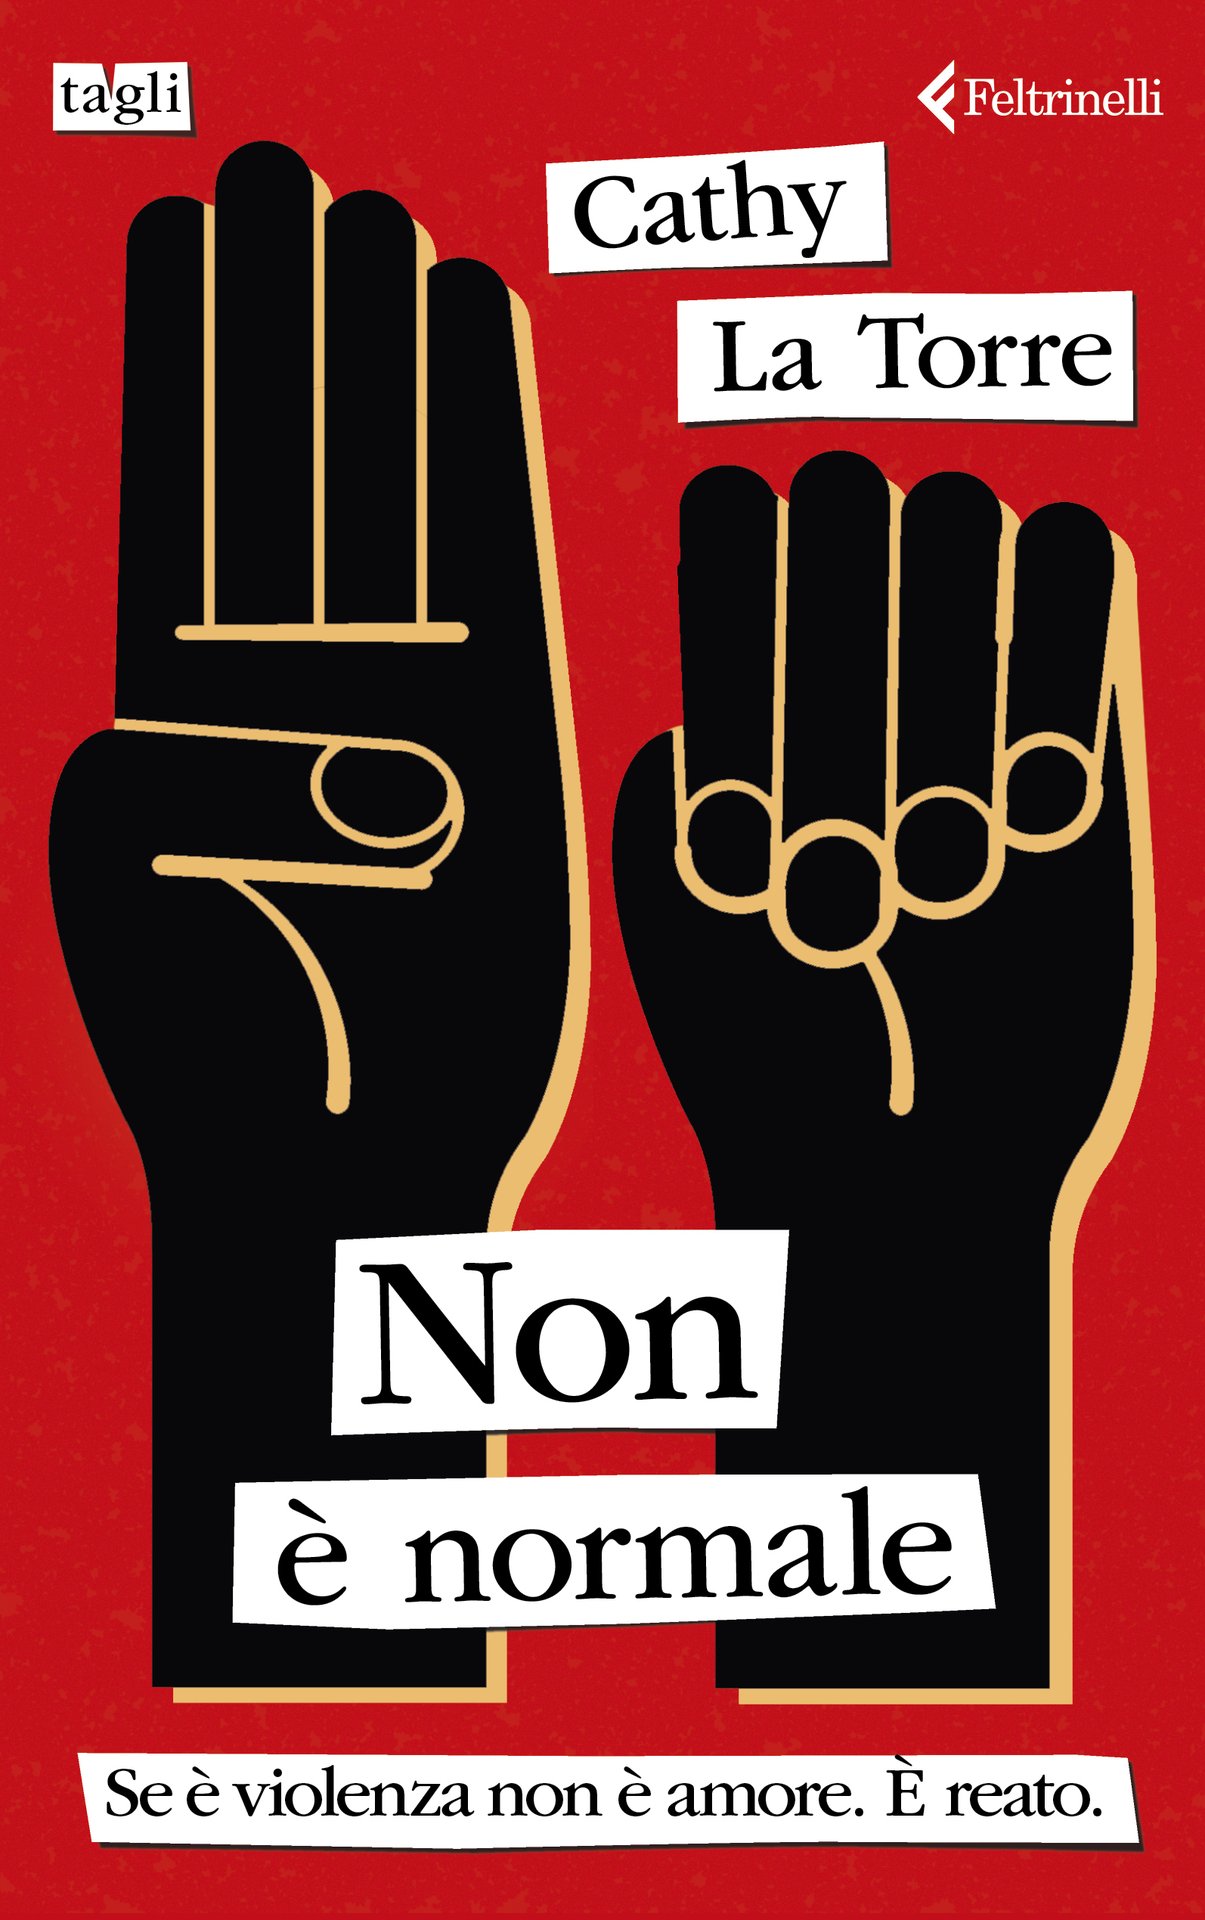 Cathy La Torre presenta "Non è normale" a Bologna